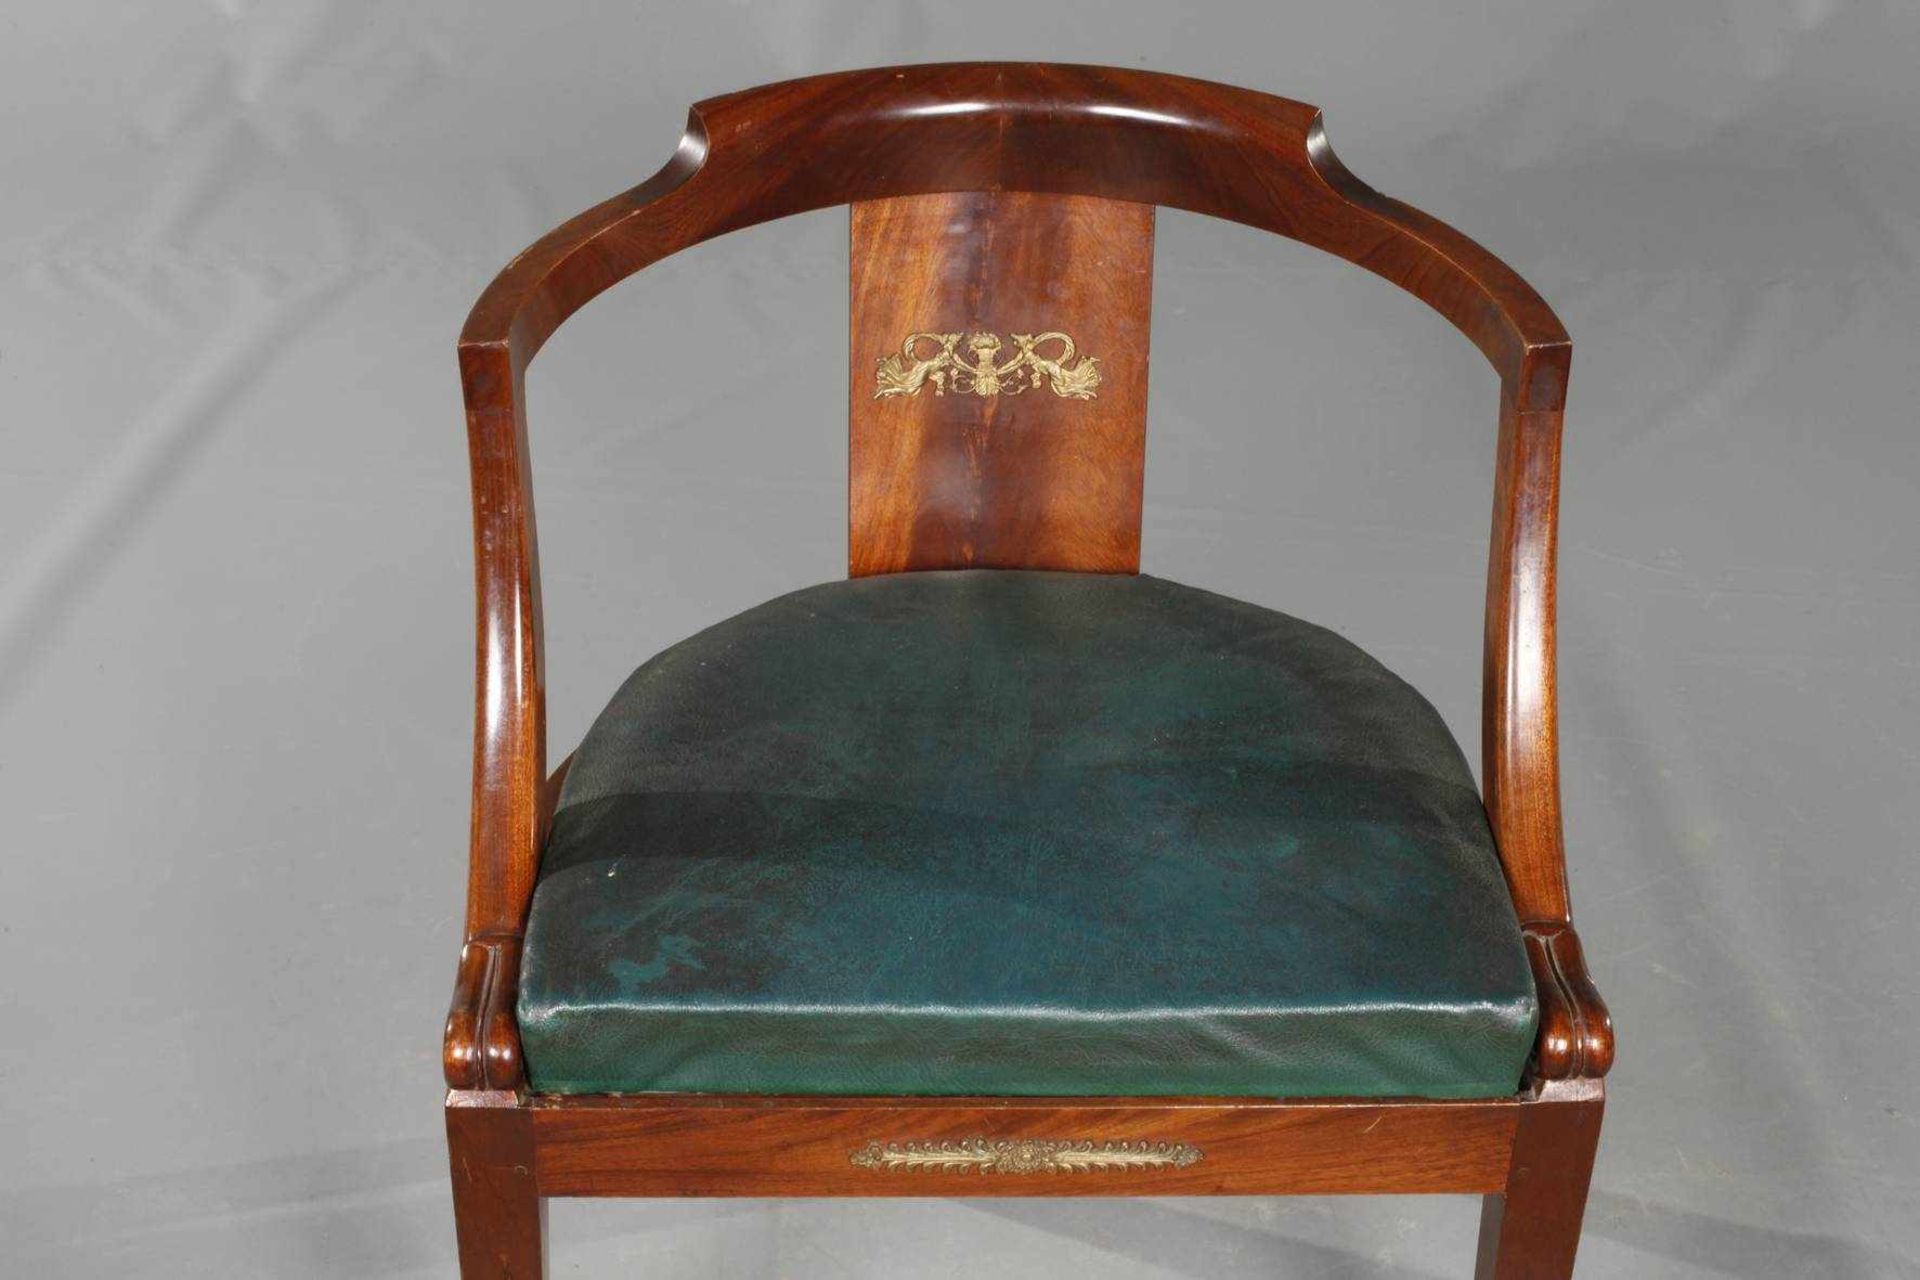 Empire-SesselMahagoni massiv, um 1800, Armlehnsessel mit halbrunder Sitzfläche, Zarge und Lehne - Bild 2 aus 3